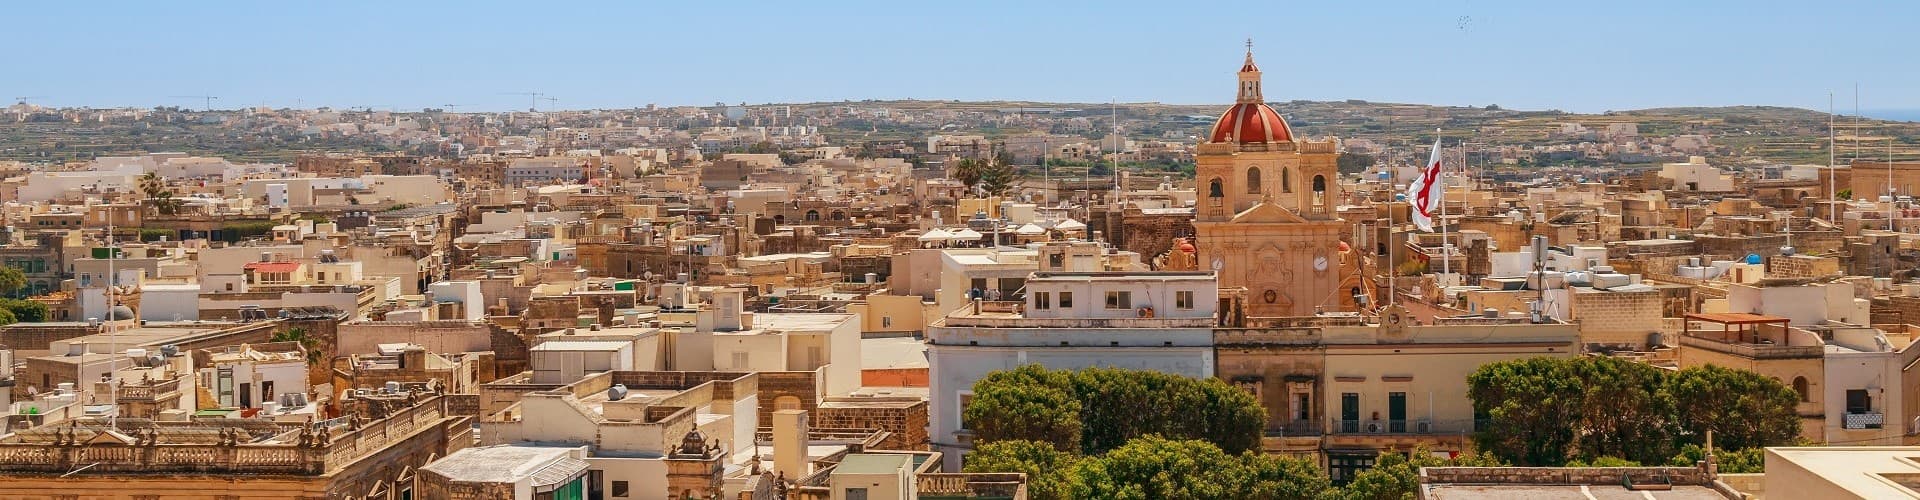 Free Mdina & Rabat Tour Malta Banner